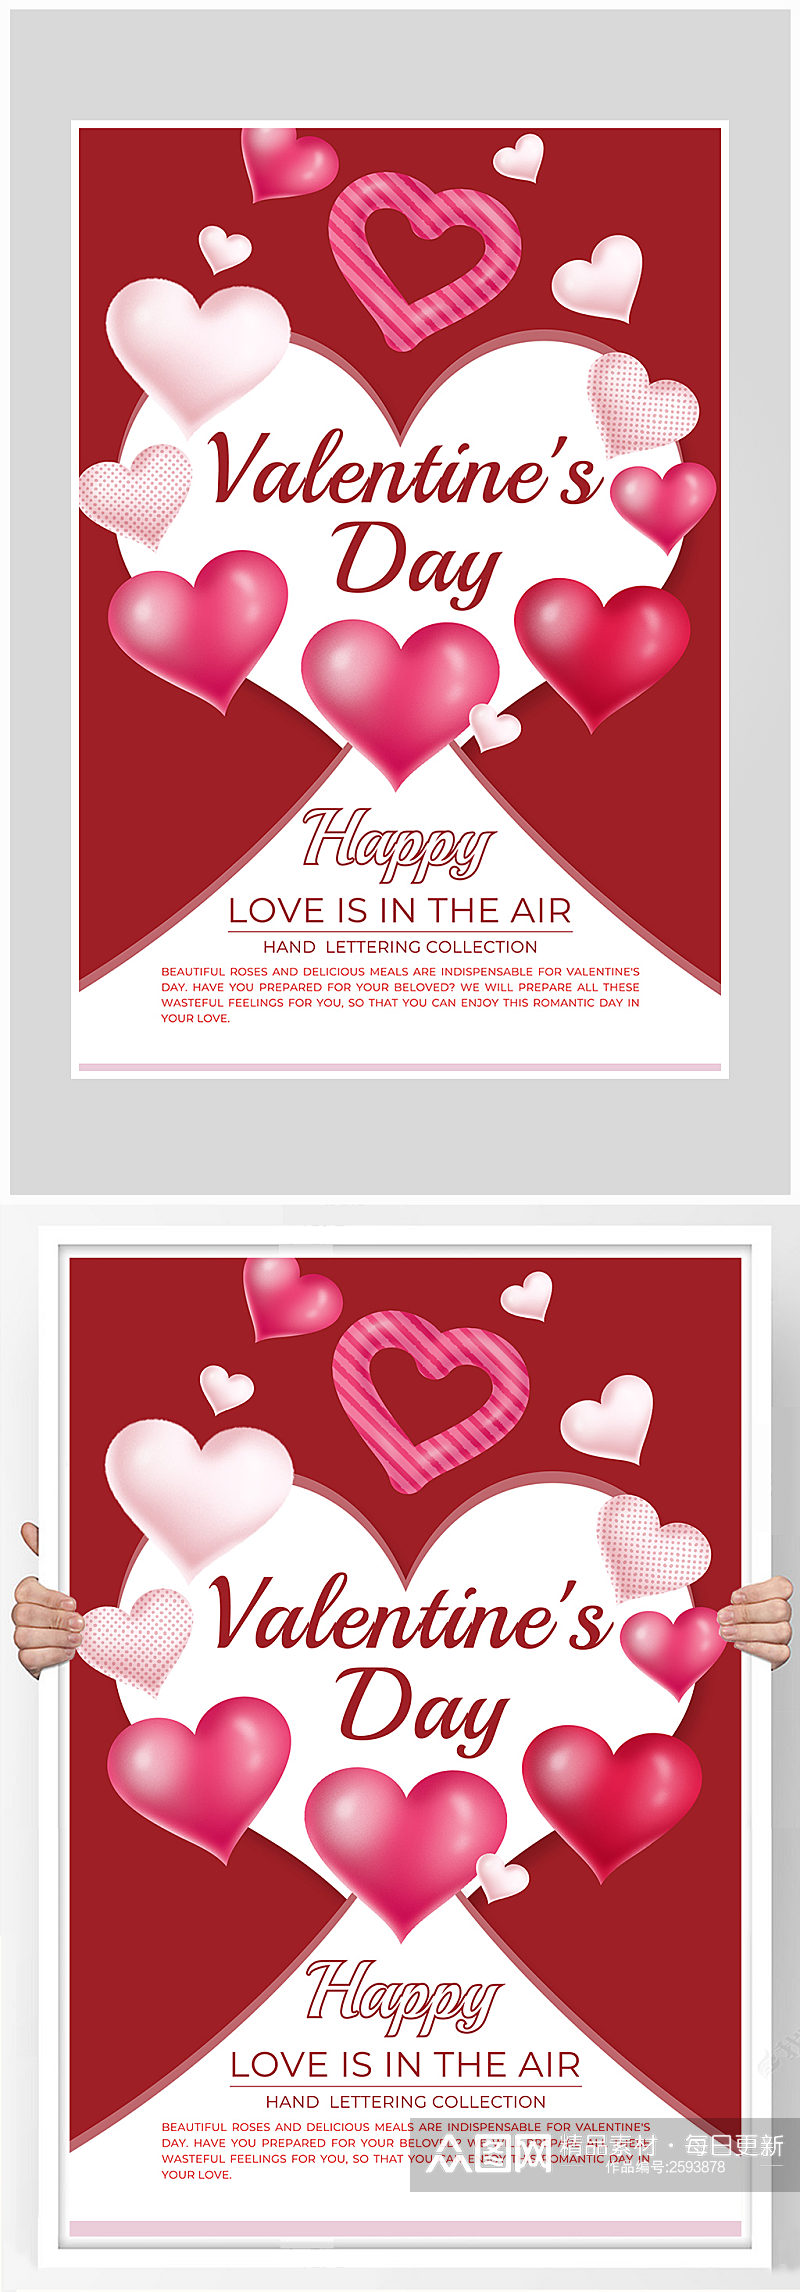 红色简约浪漫情人节海报设计素材